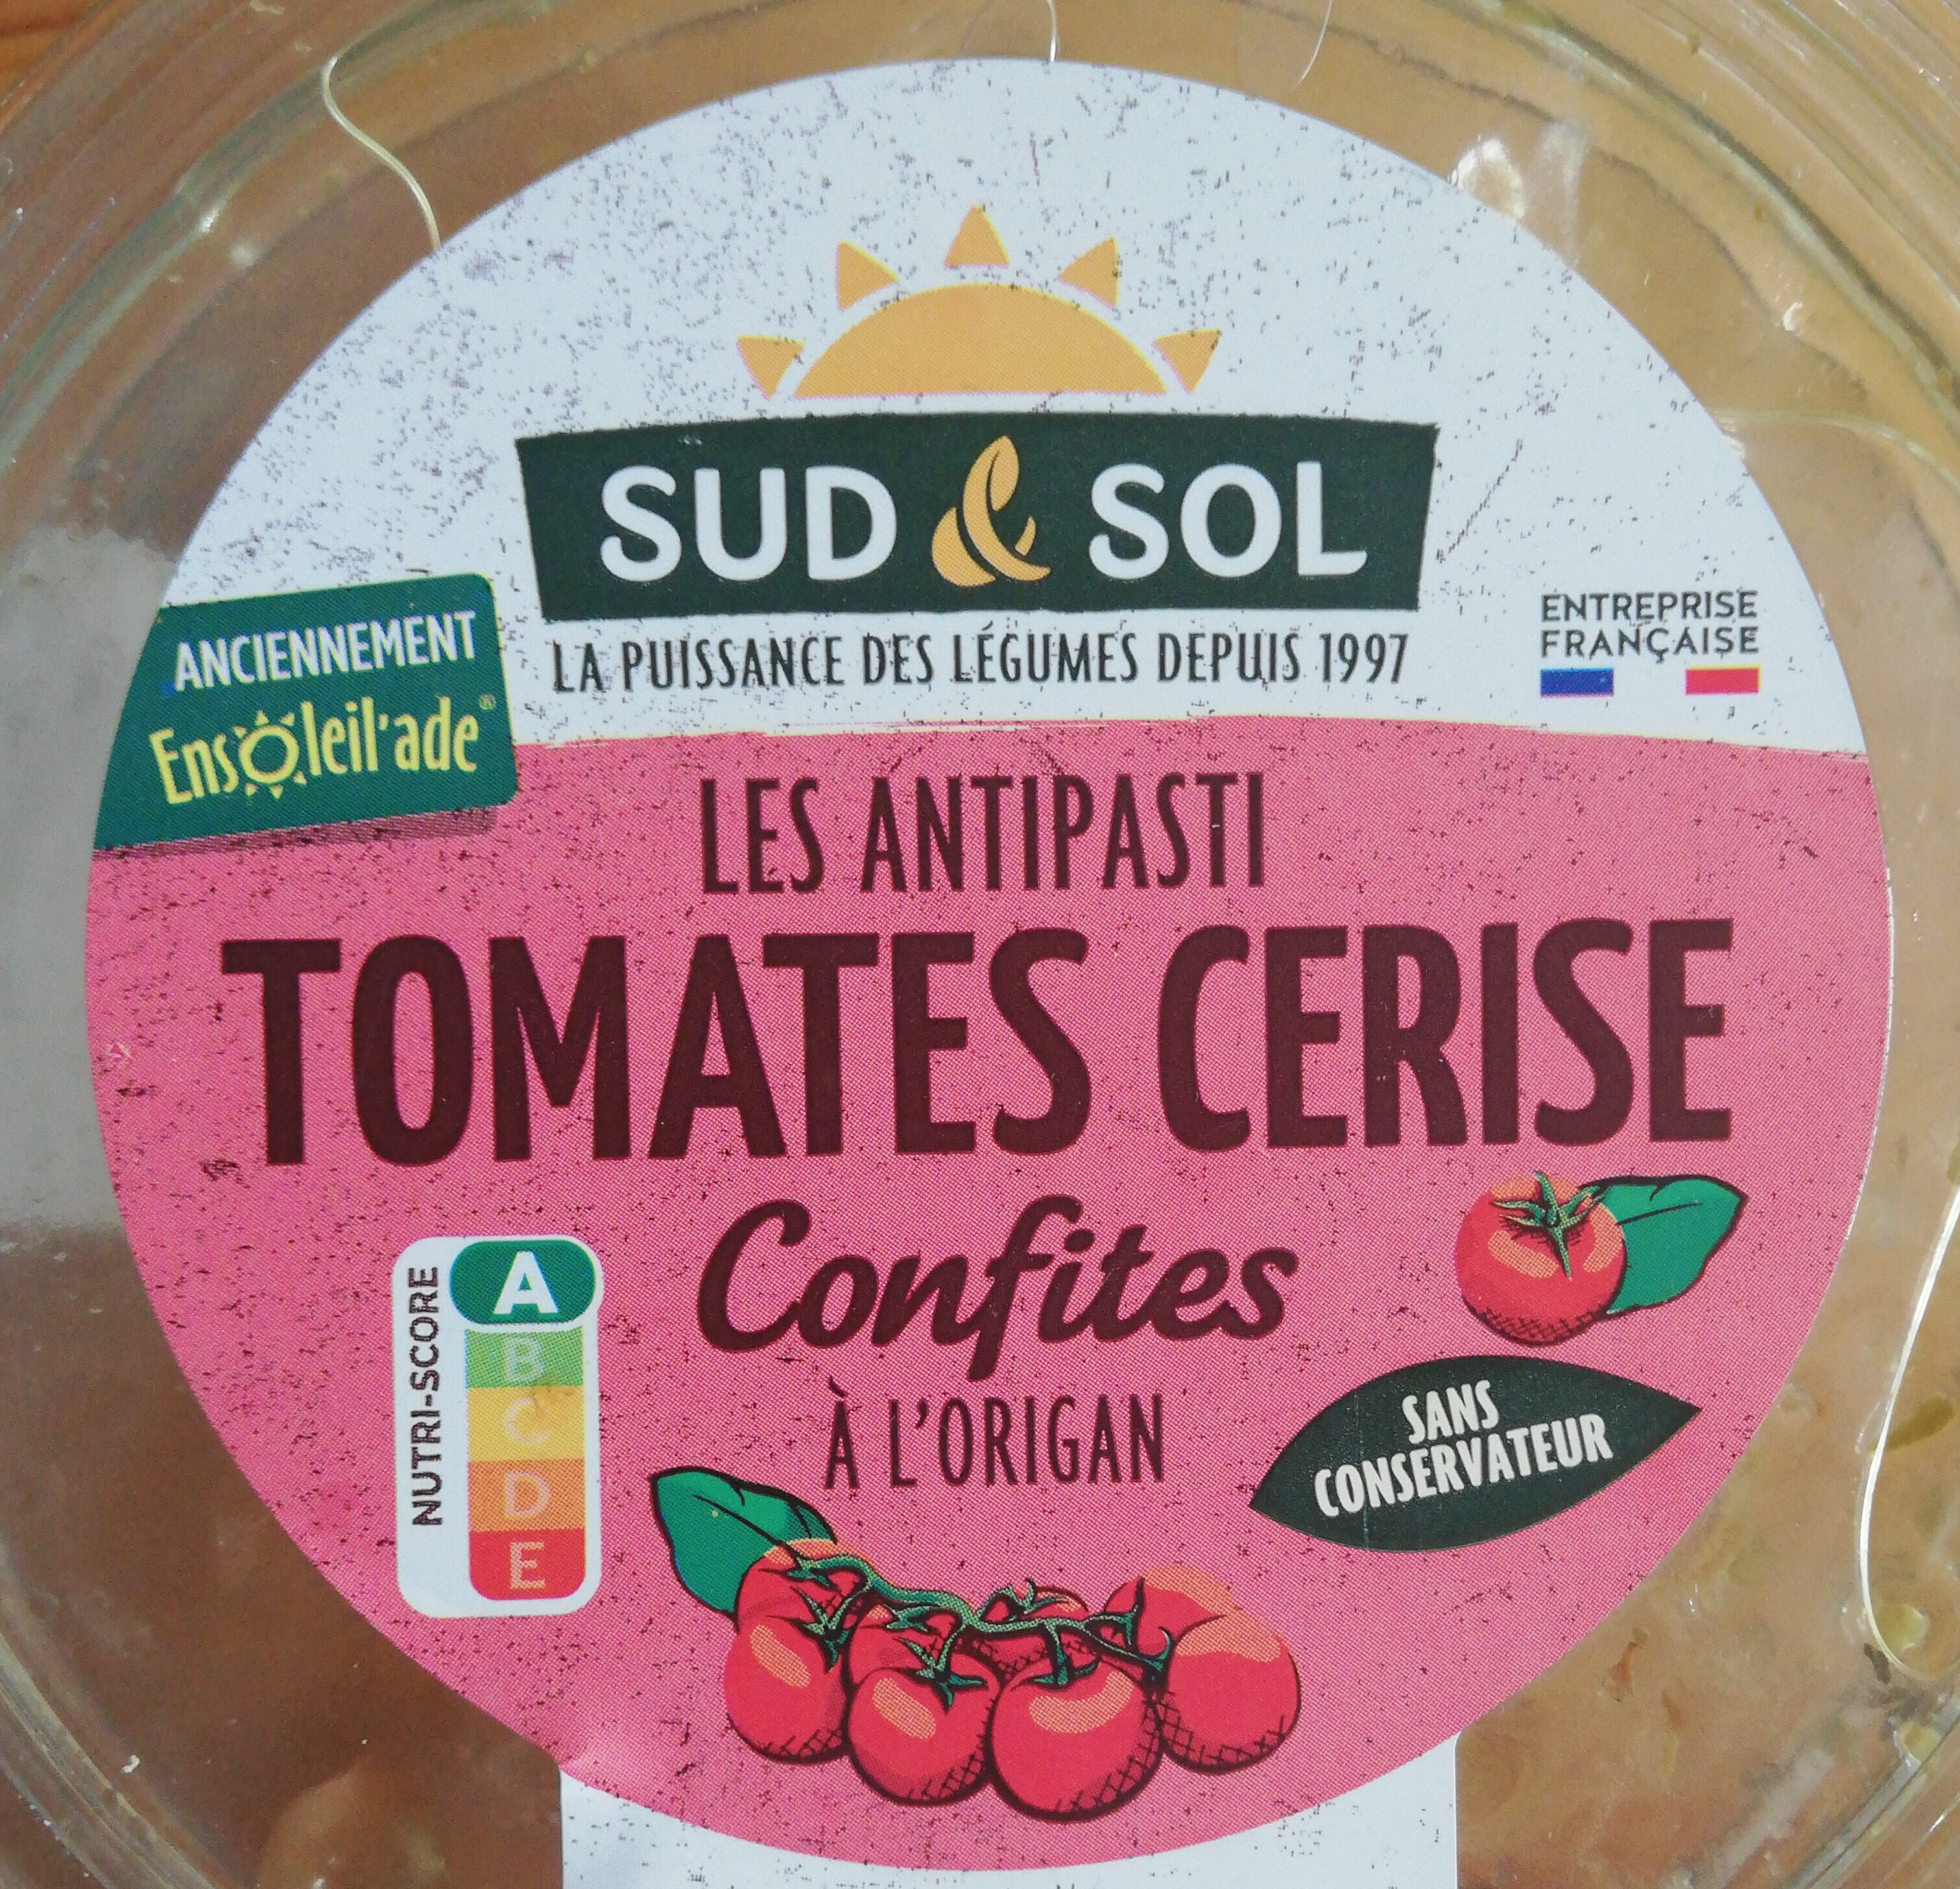 Tomates Cerise confites à l'Origan - Product - fr